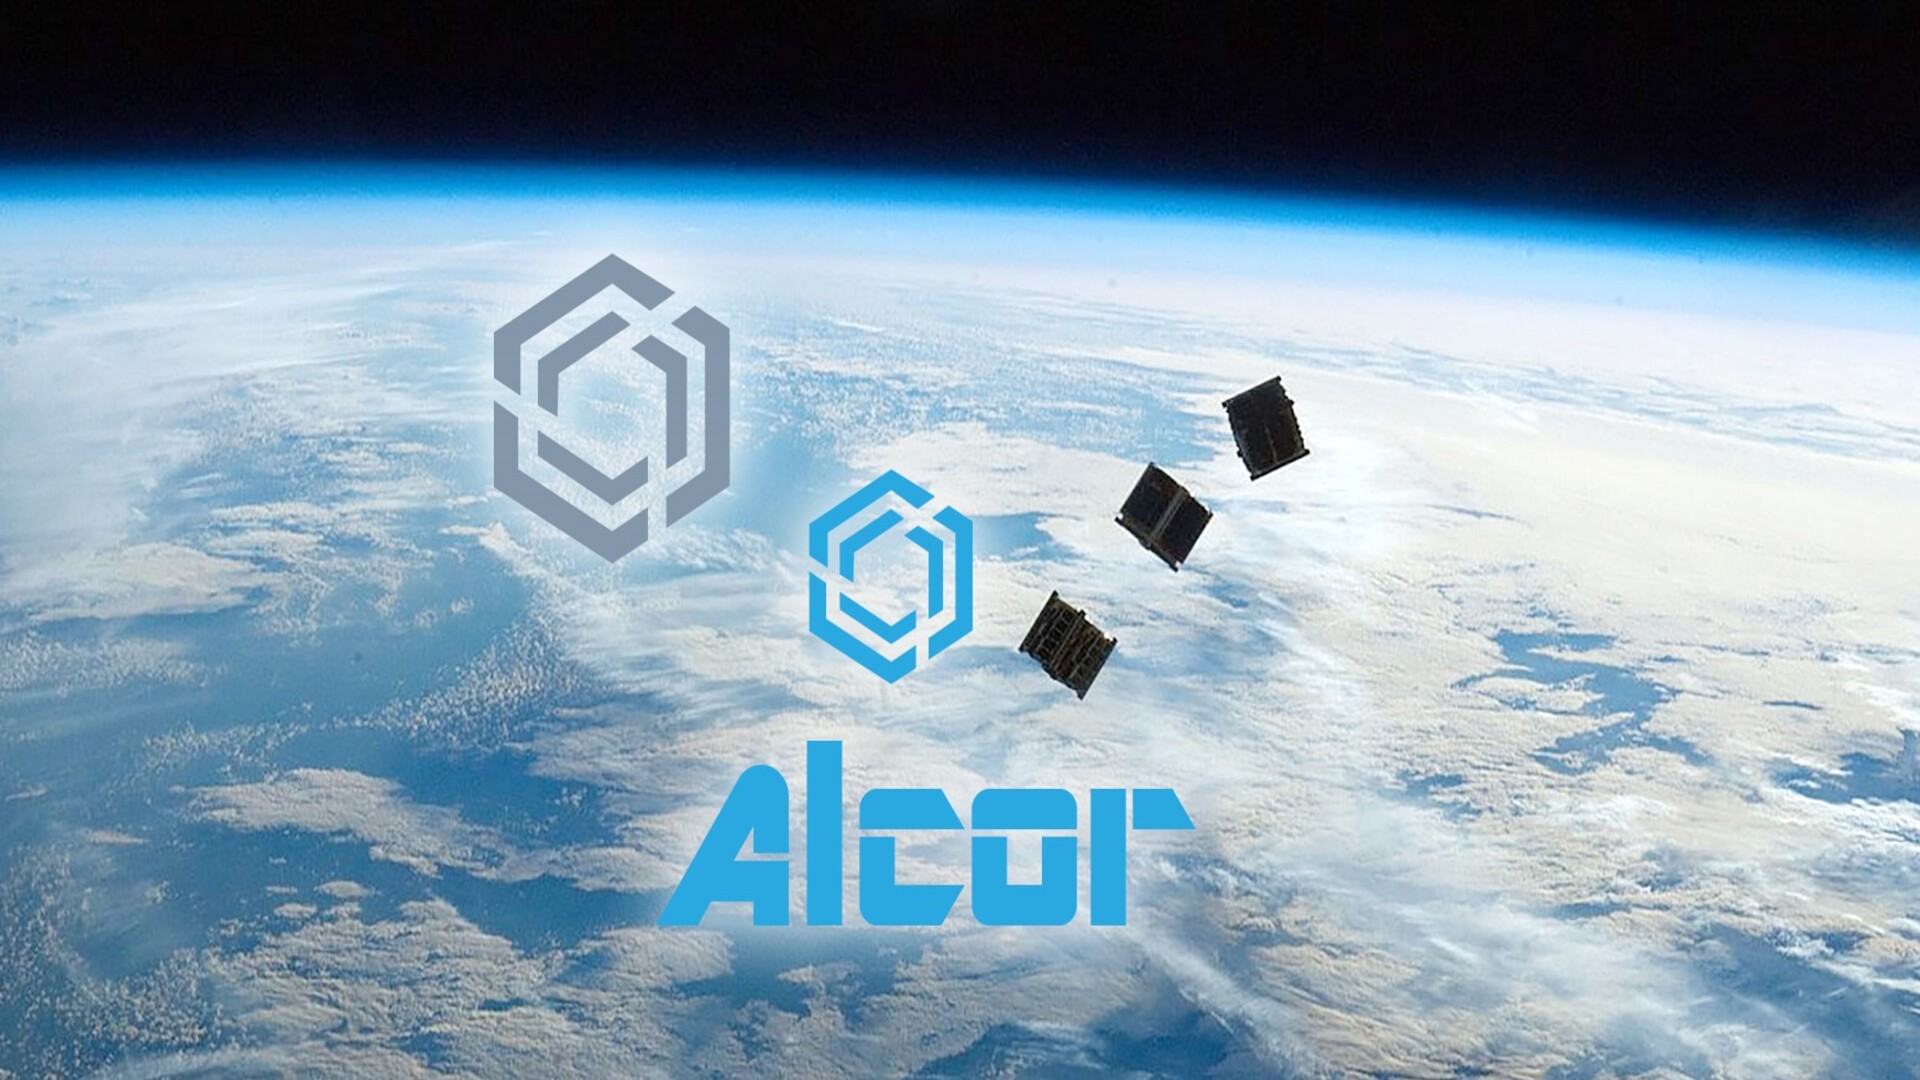 ASI - Tecnologie innovative per lo studio della vita nello spazio a bordo del programma ALCOR